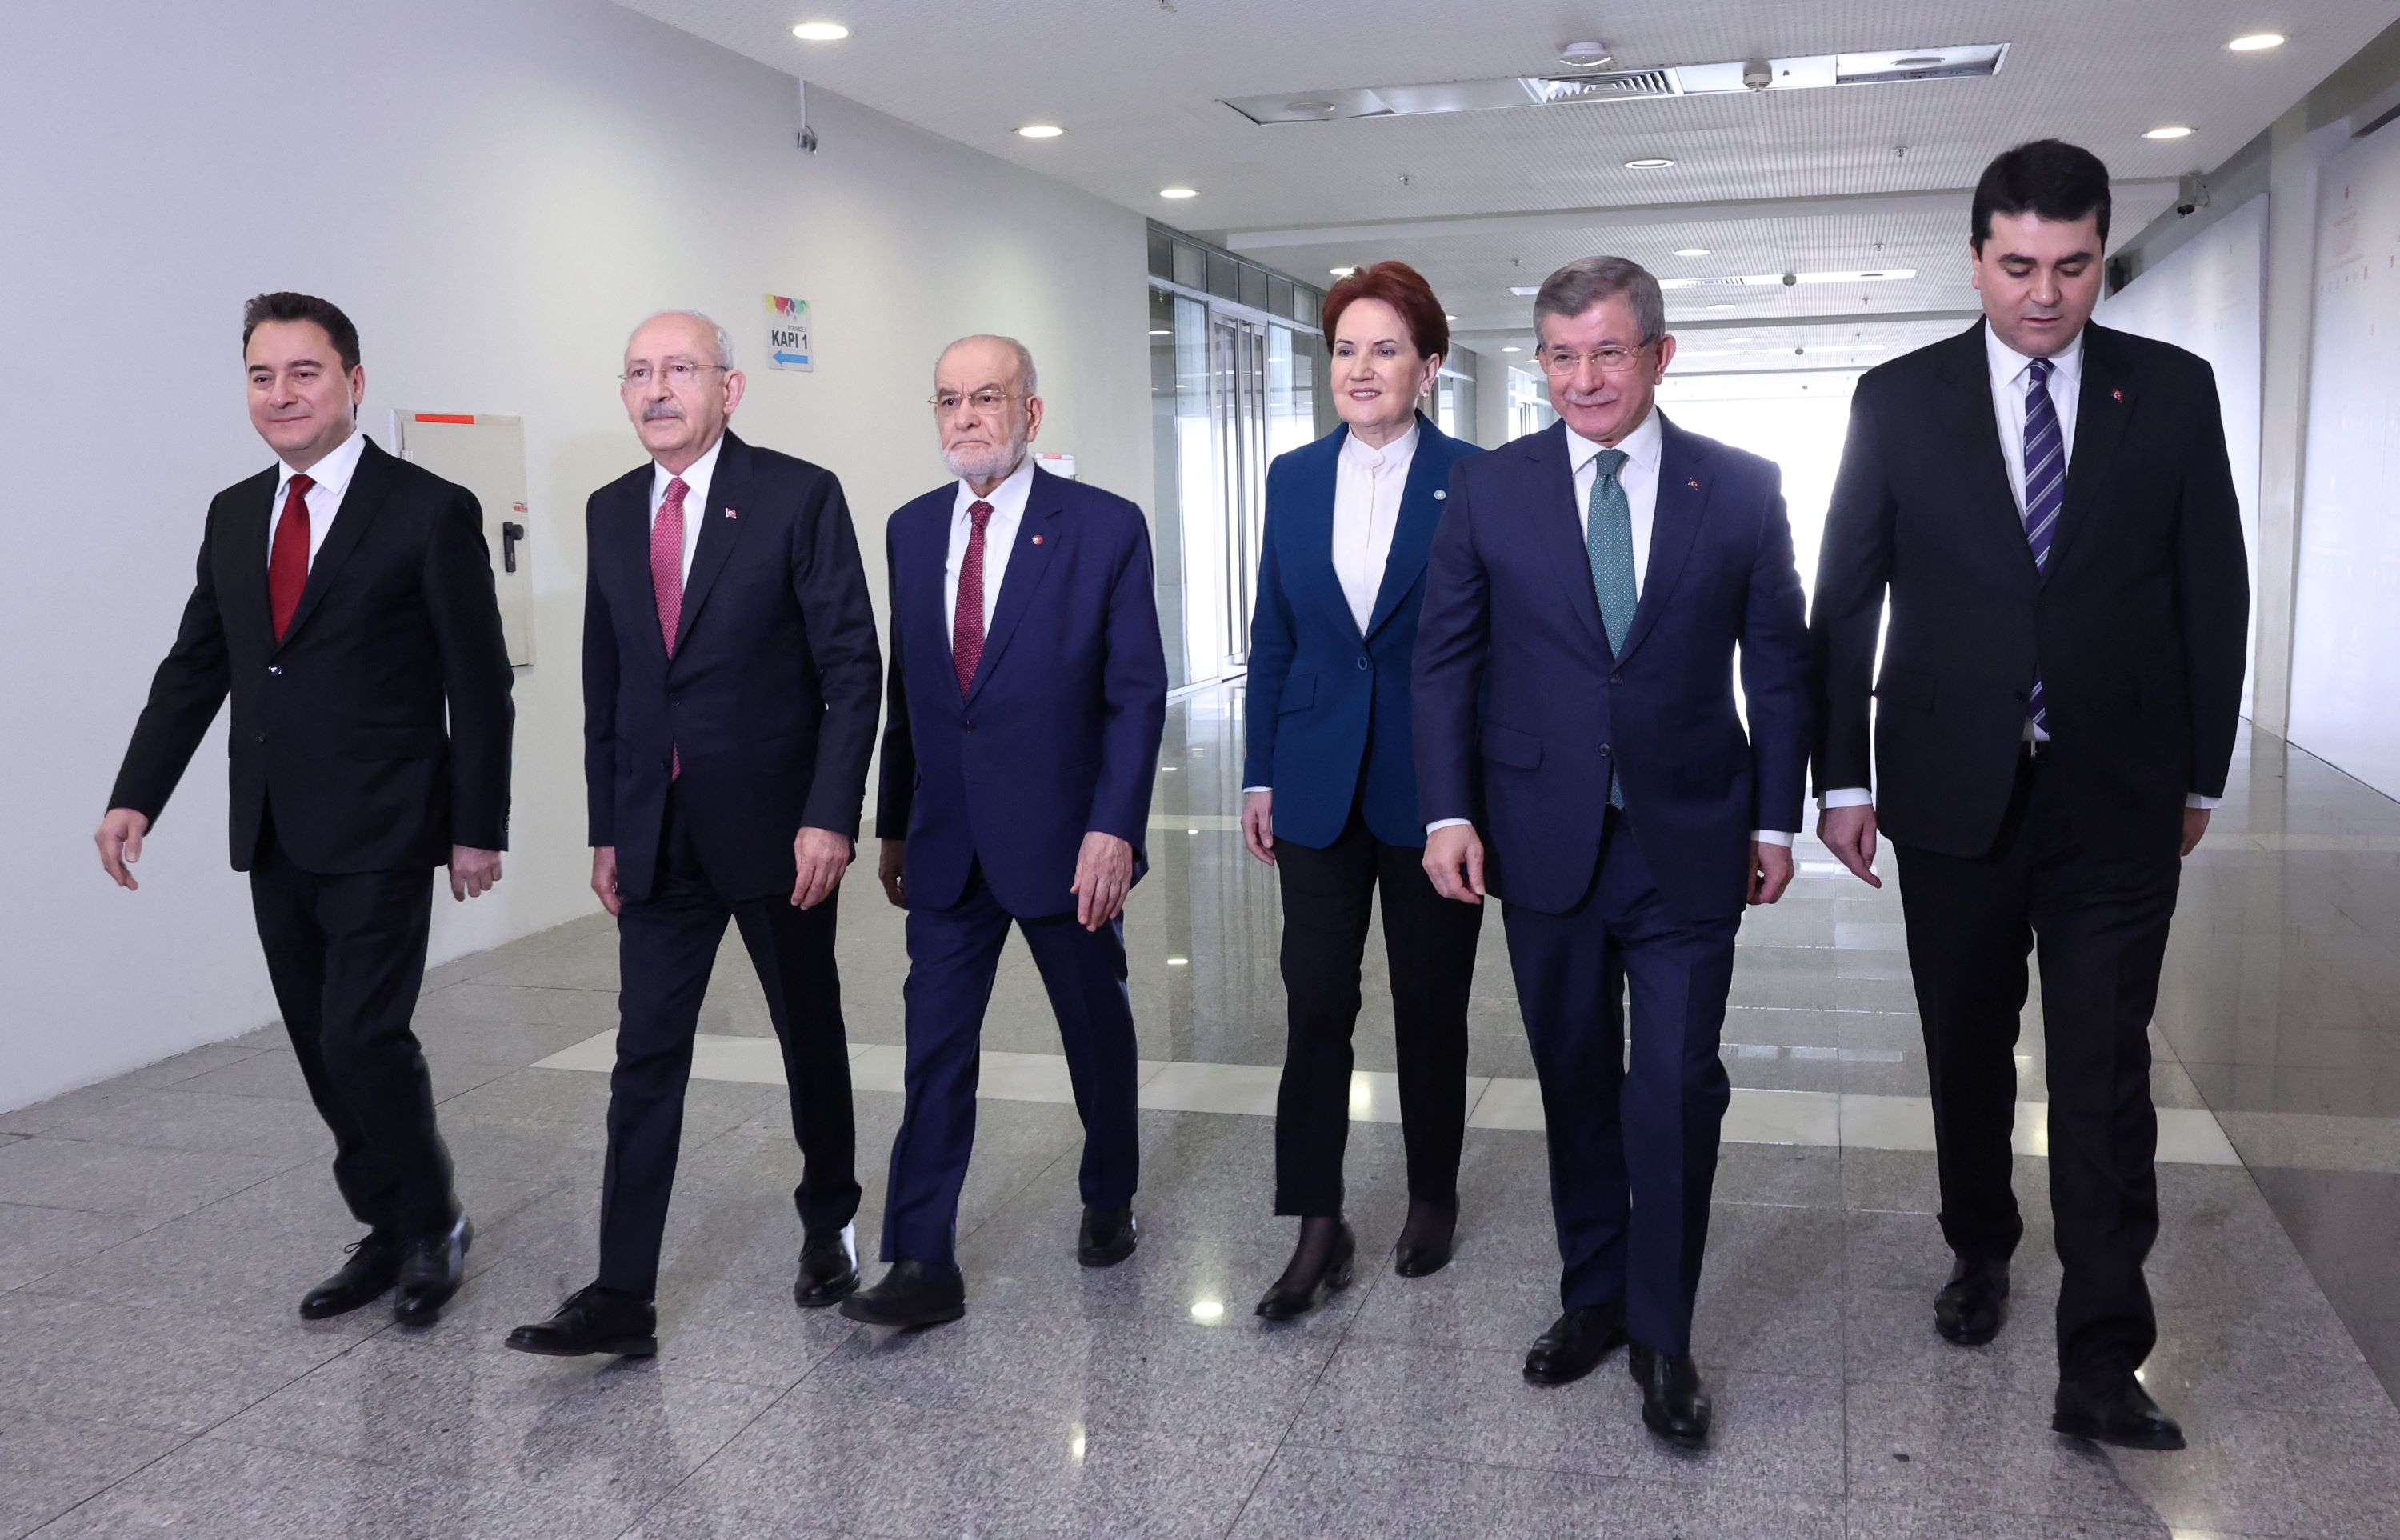 De gauche à droite : Ali Babacan, Kemal Kılıçdaroğlu, Temel Karamollaoğlu, Meral Akşener, Ahmet Davutoğlu, Gültekin Uysal (AFP)